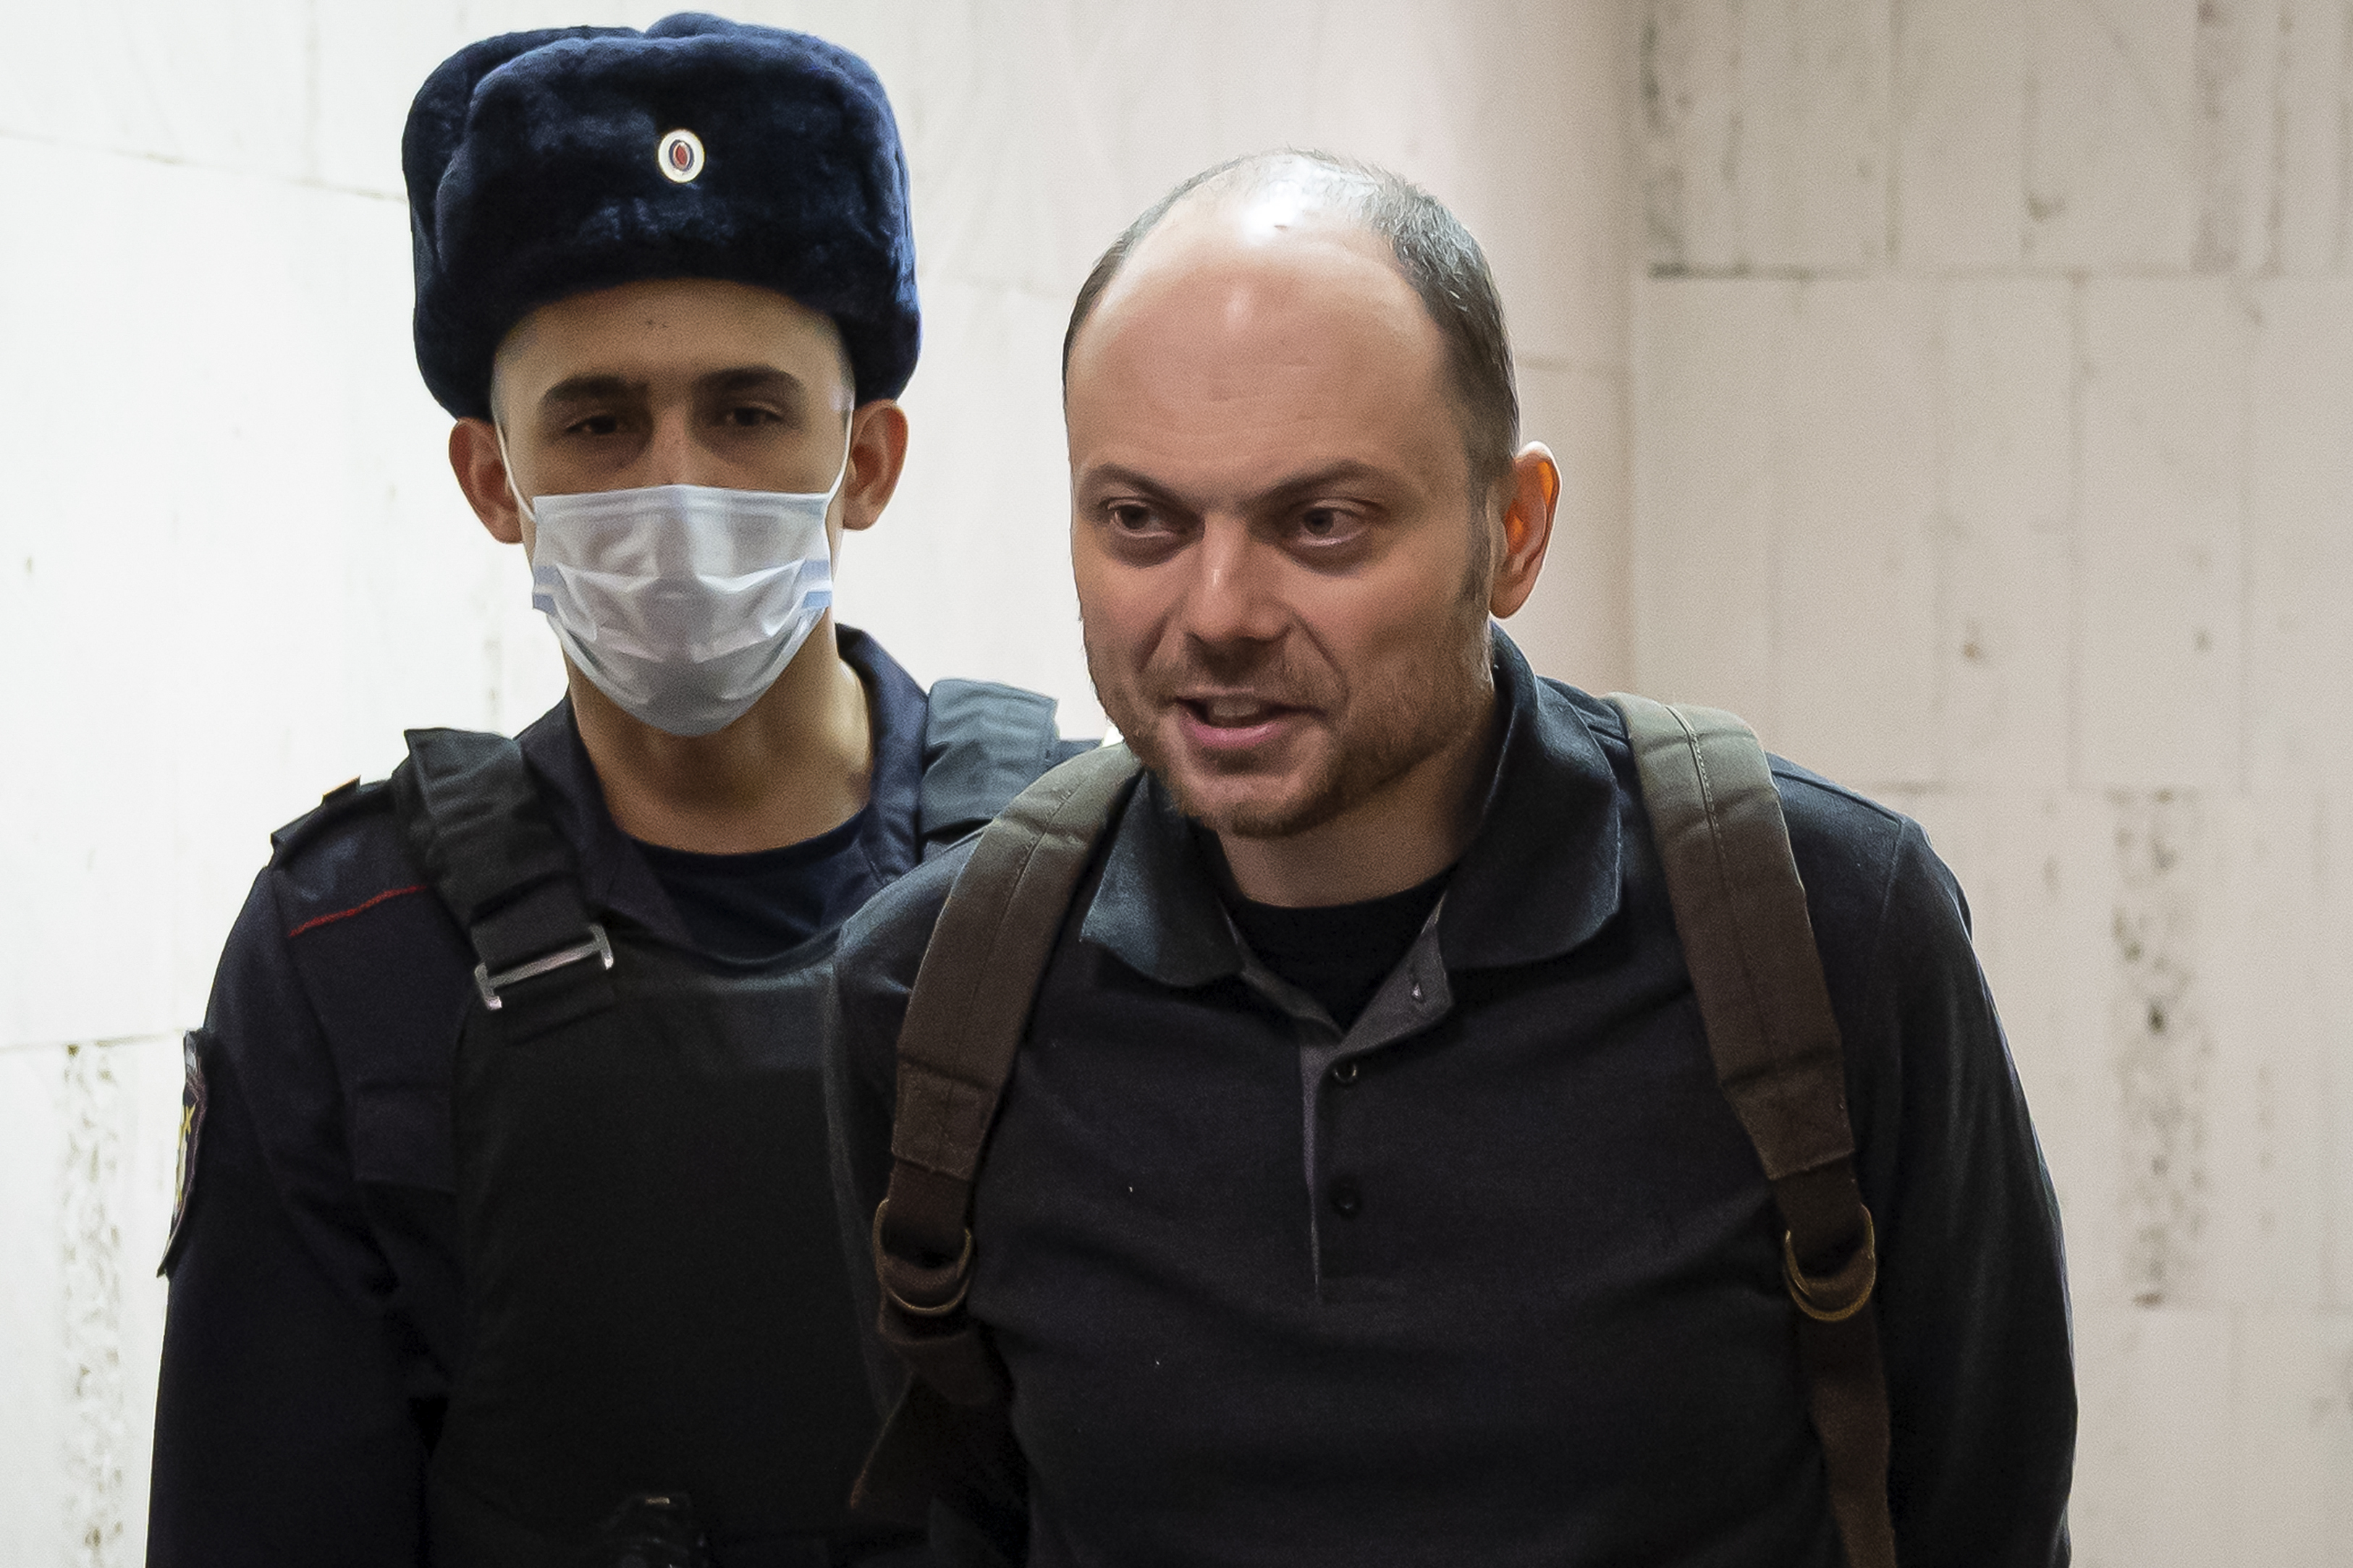 Das britische Außenministerium ist „zutiefst besorgt“ über den inhaftierten Putin-Feind, der nach zweimaliger Vergiftung an einer Nervenstörung leidet